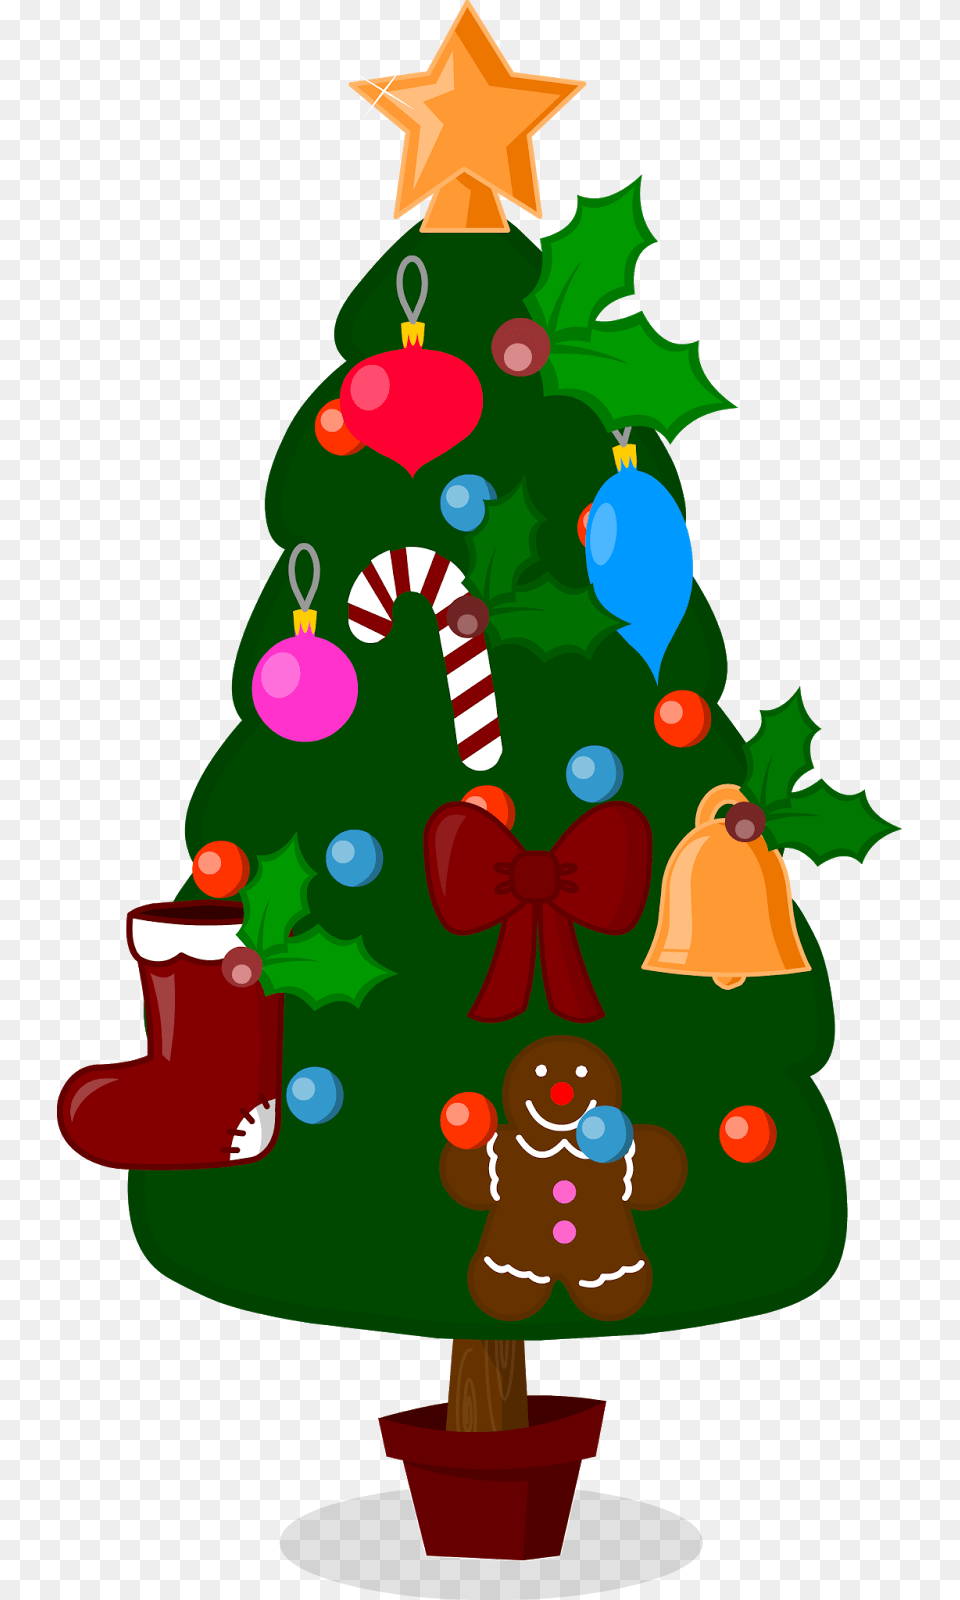 Arbol 2 Cosas De Navidad, Christmas, Christmas Decorations, Festival, Plant Free Transparent Png